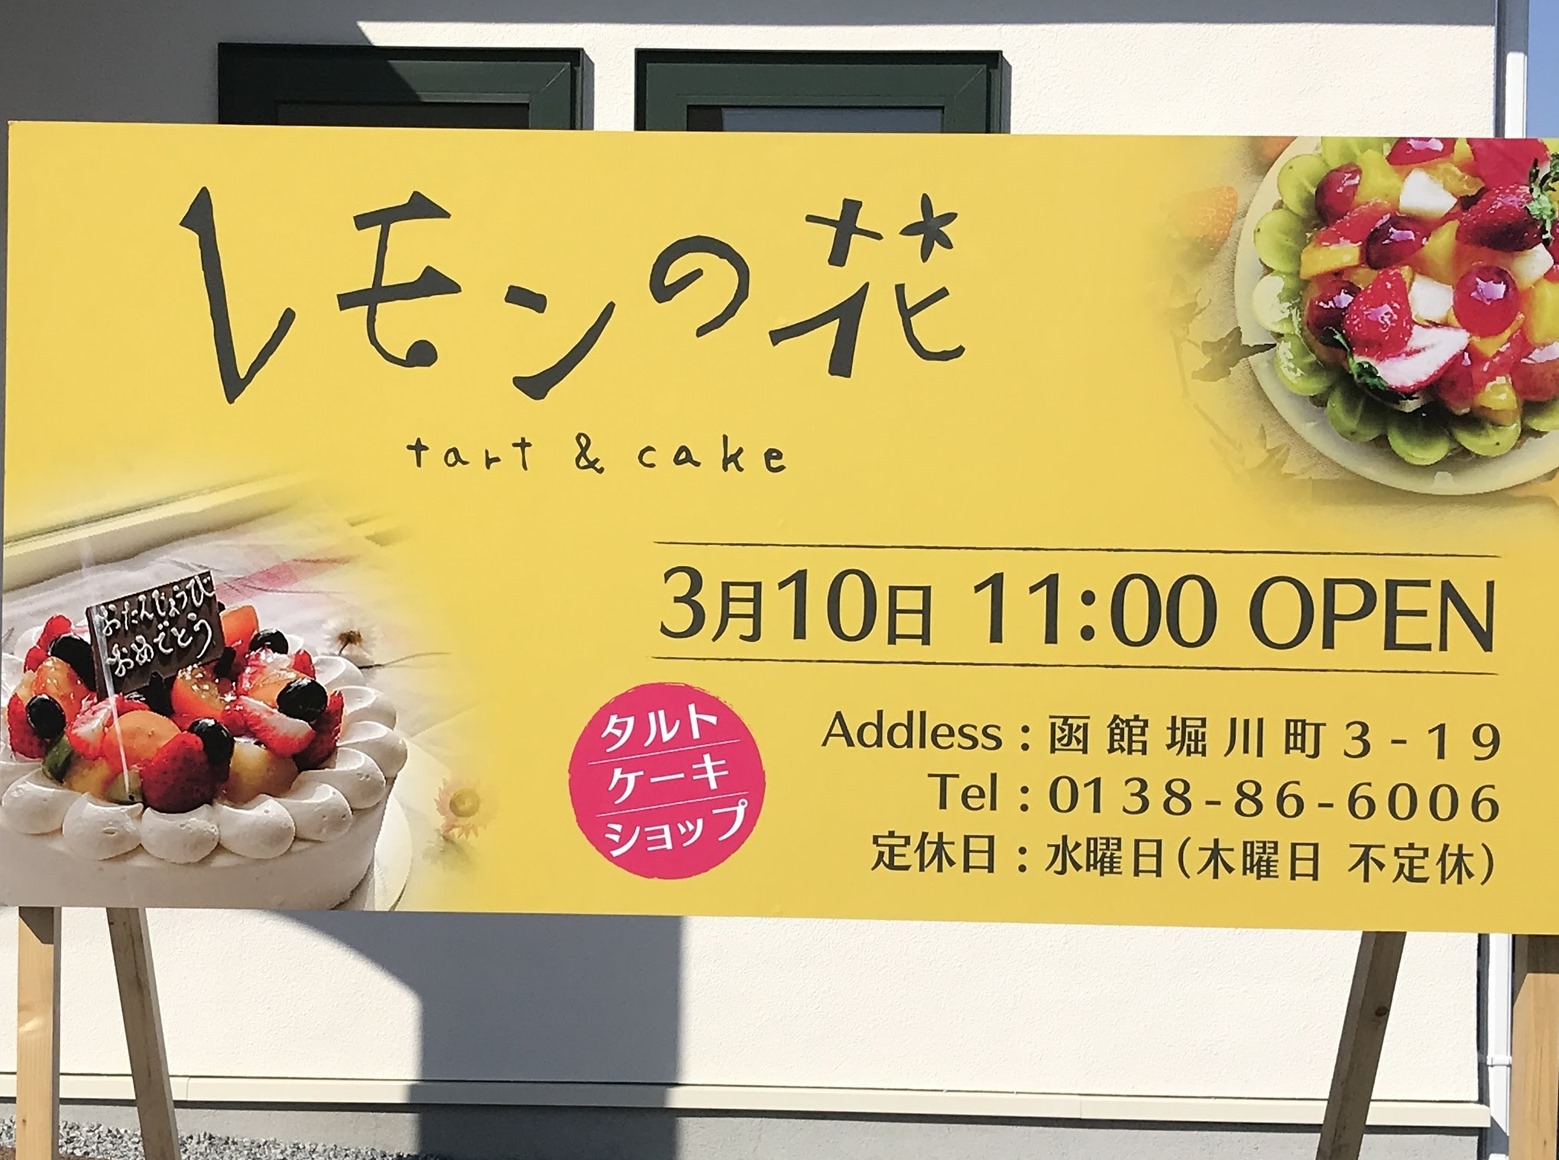 オープンした タルトとケーキの店 レモンの花 で 函館の飲み食い日記 Powered By ライブドアブログ